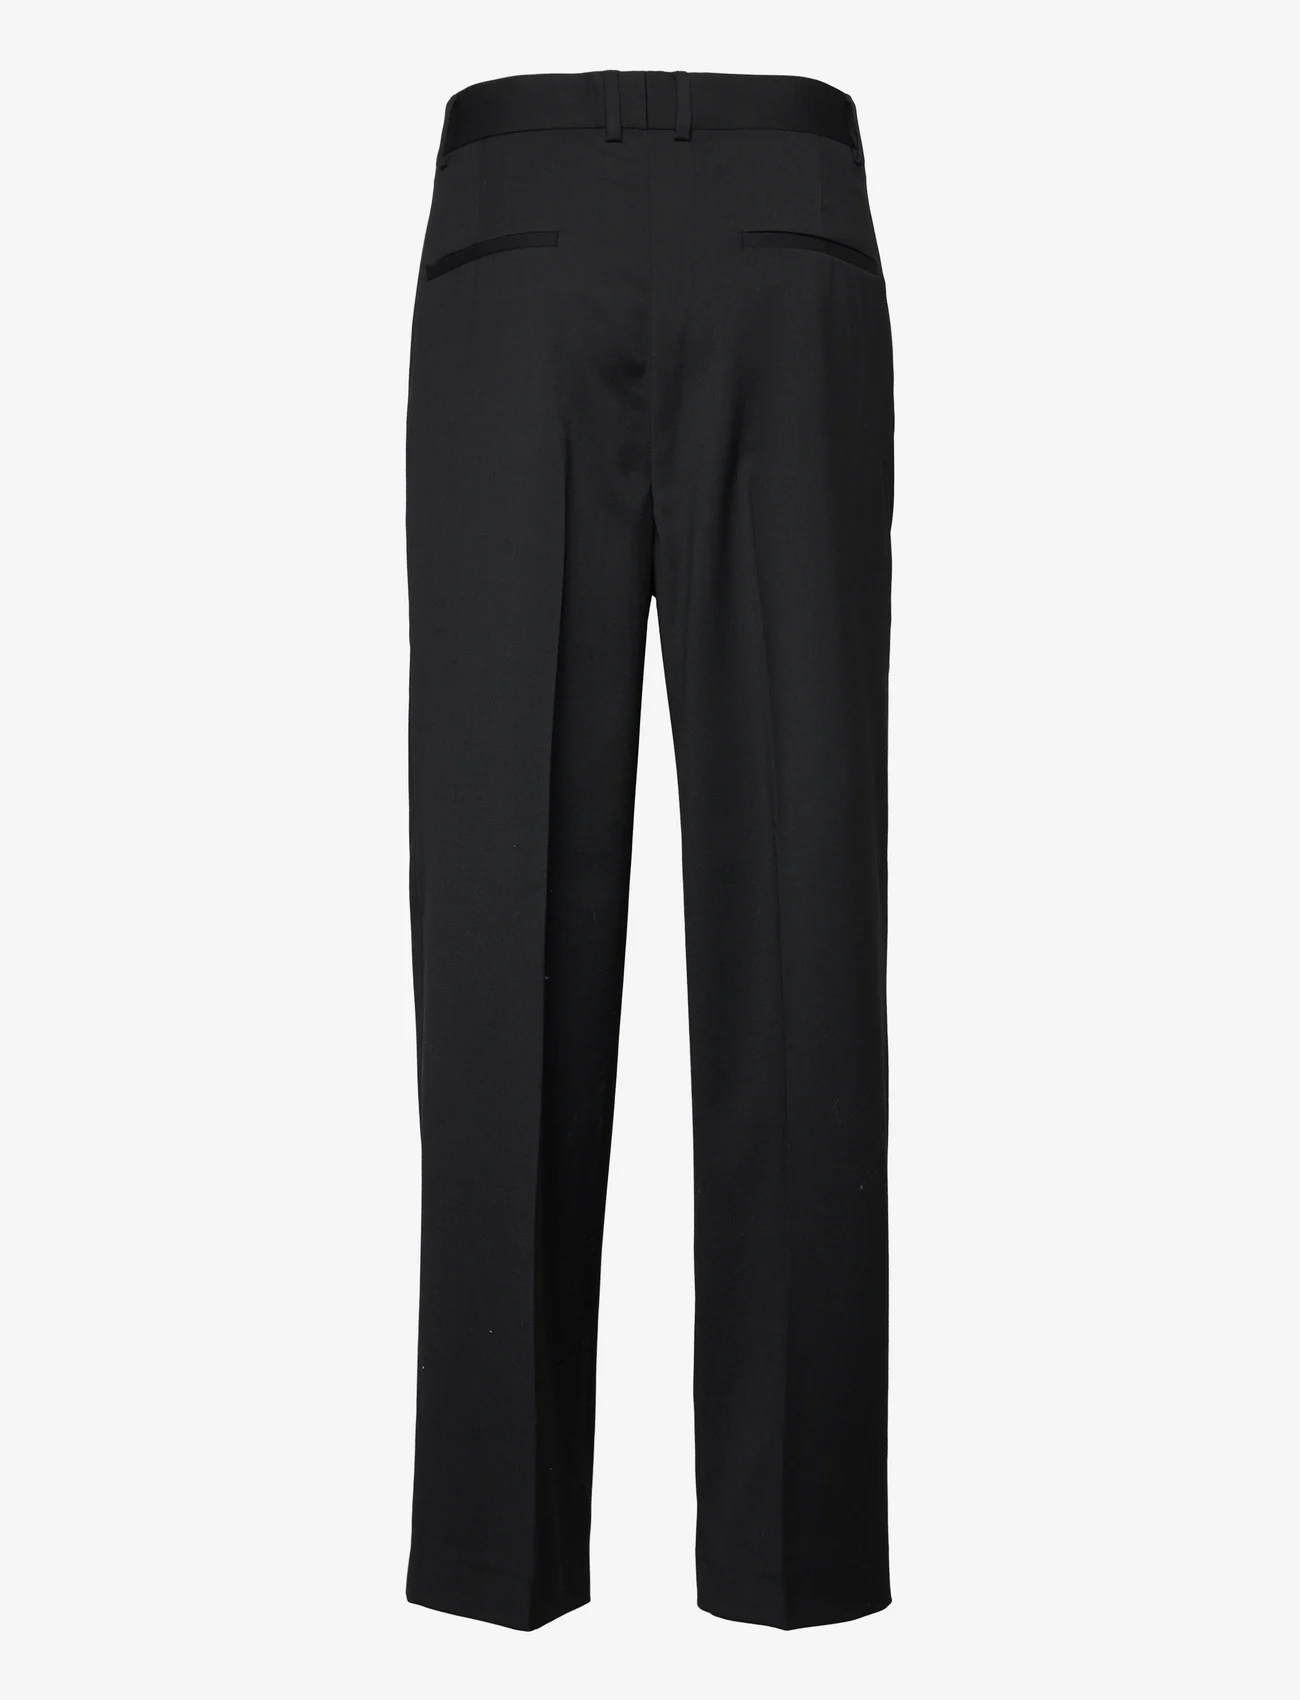 HAN Kjøbenhavn - Boxy Suit Pants - jakkesætsbukser - black - 1